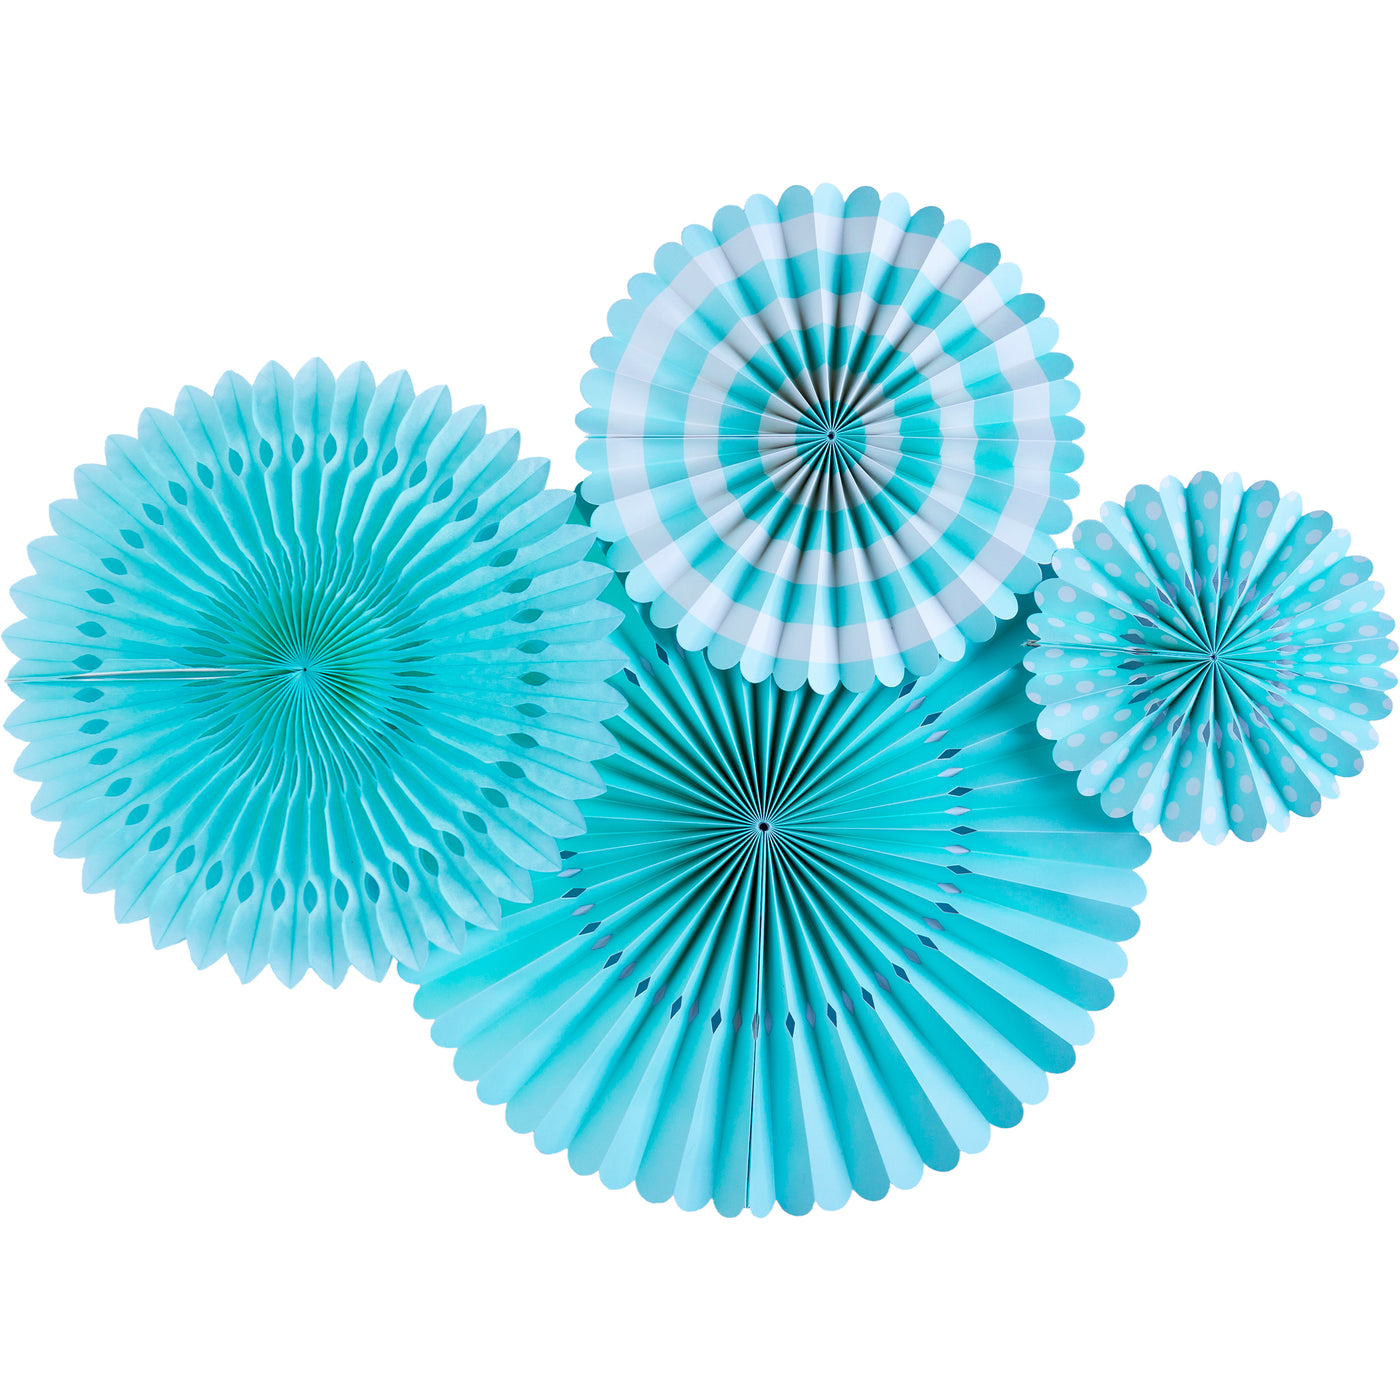 Basic Aqua Blue Fan Set - My Mind's Eye Paper Goods